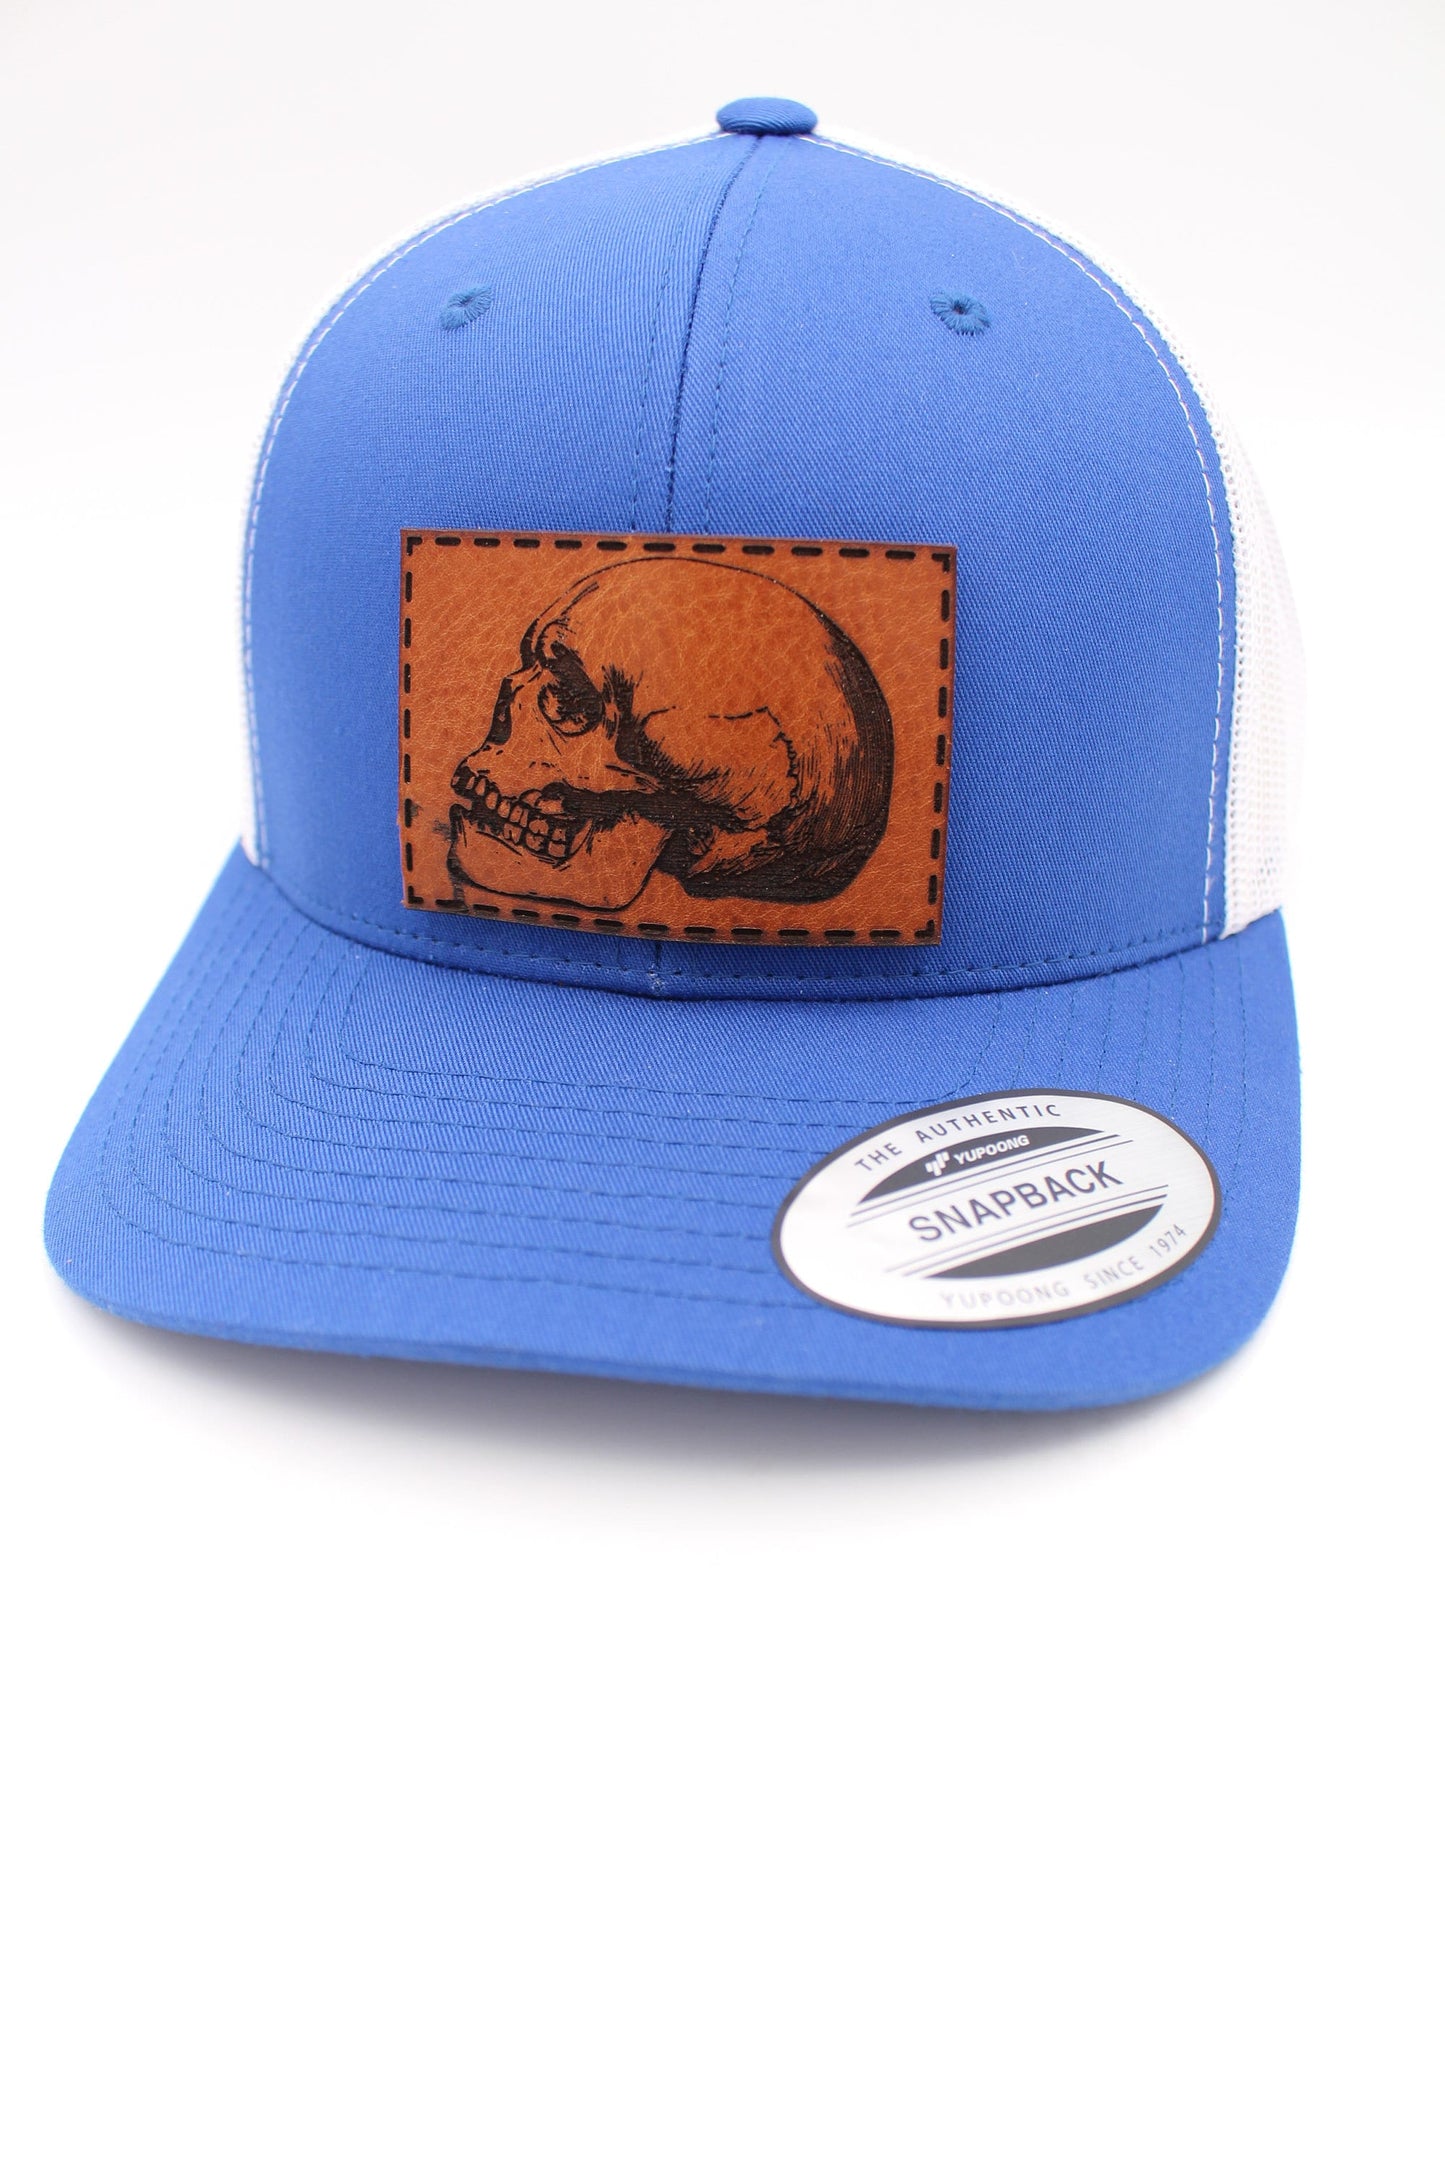 Skull Leather Patch Hat | Skull Trucker Hat | Death Art Trucker Hat